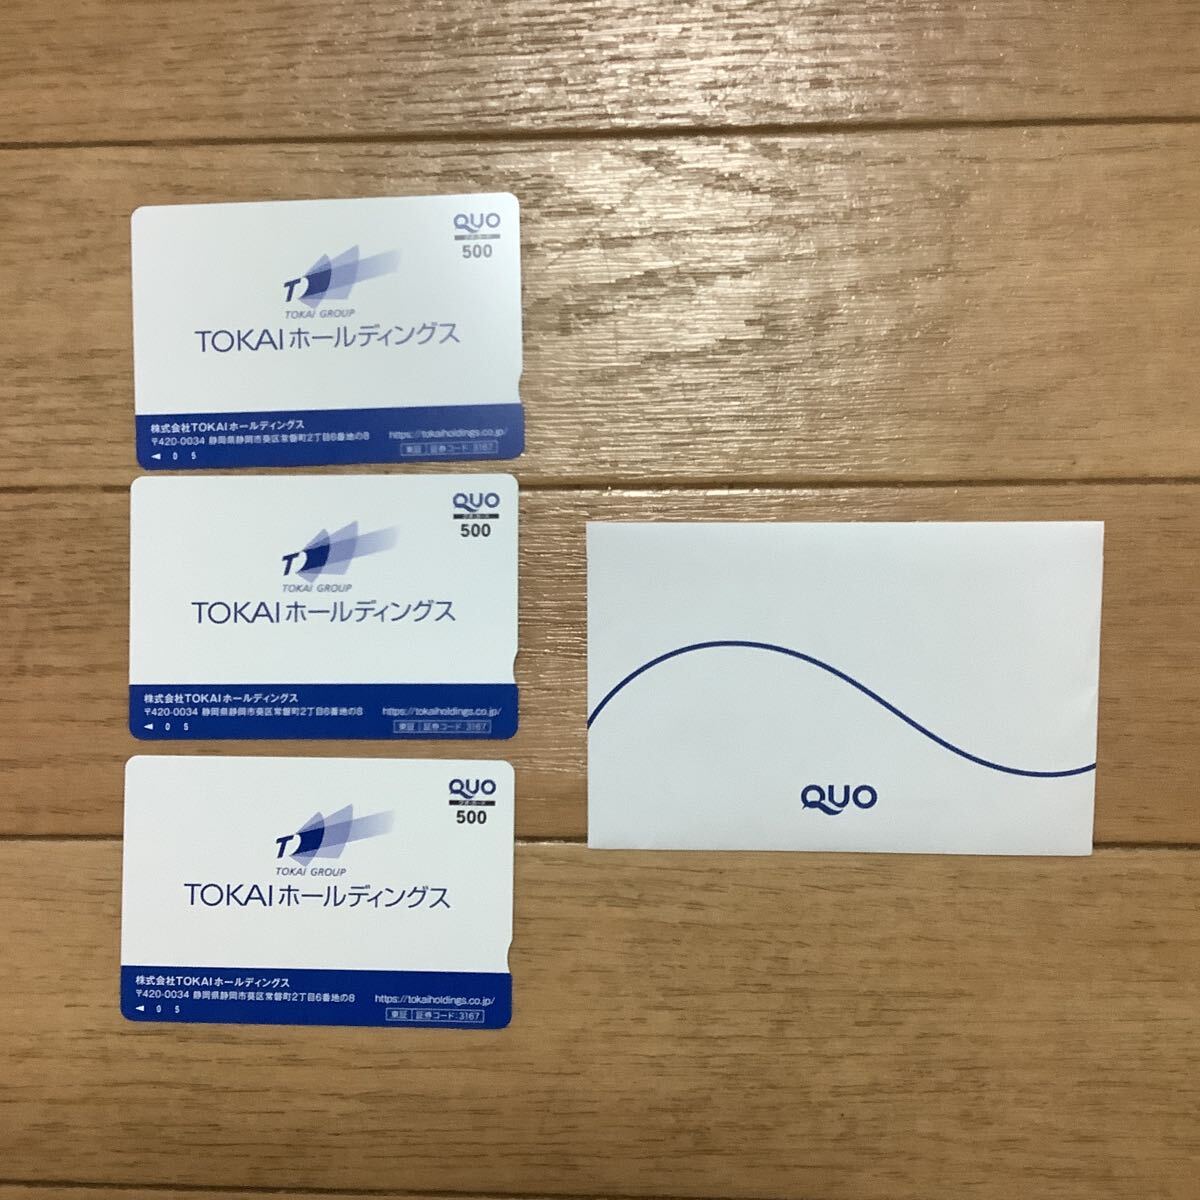 *TOKAI удерживание s QUO card 500 иен 3 листов 1500 иен минут * бесплатная доставка 